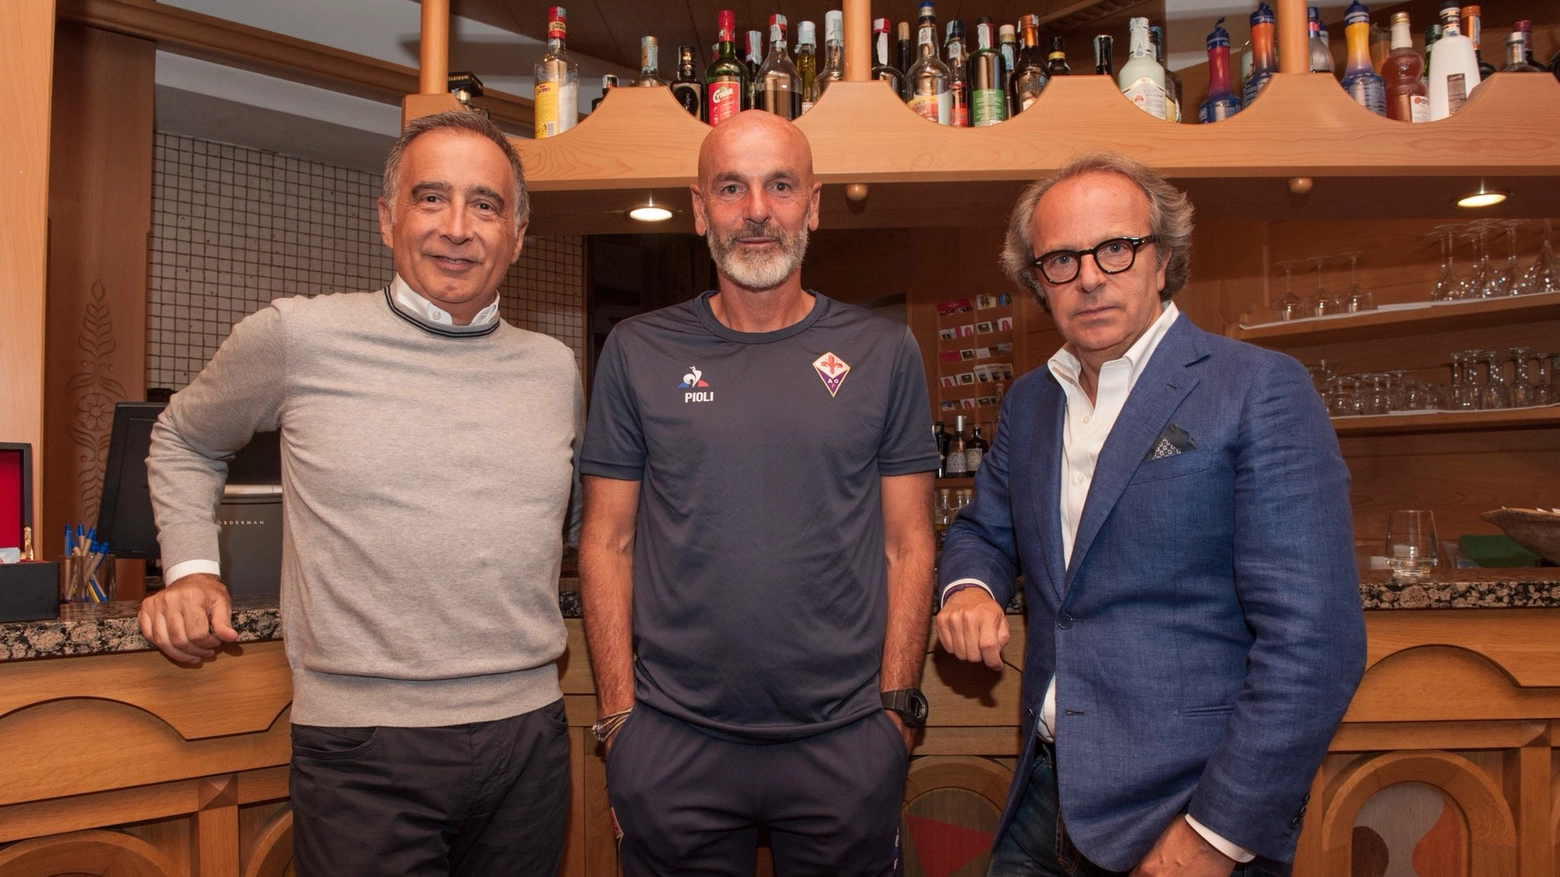 Mario Cognigni e Andrea Della Valle a cena con Pioli e la squadra a Moena(ACF Fiorentina) 